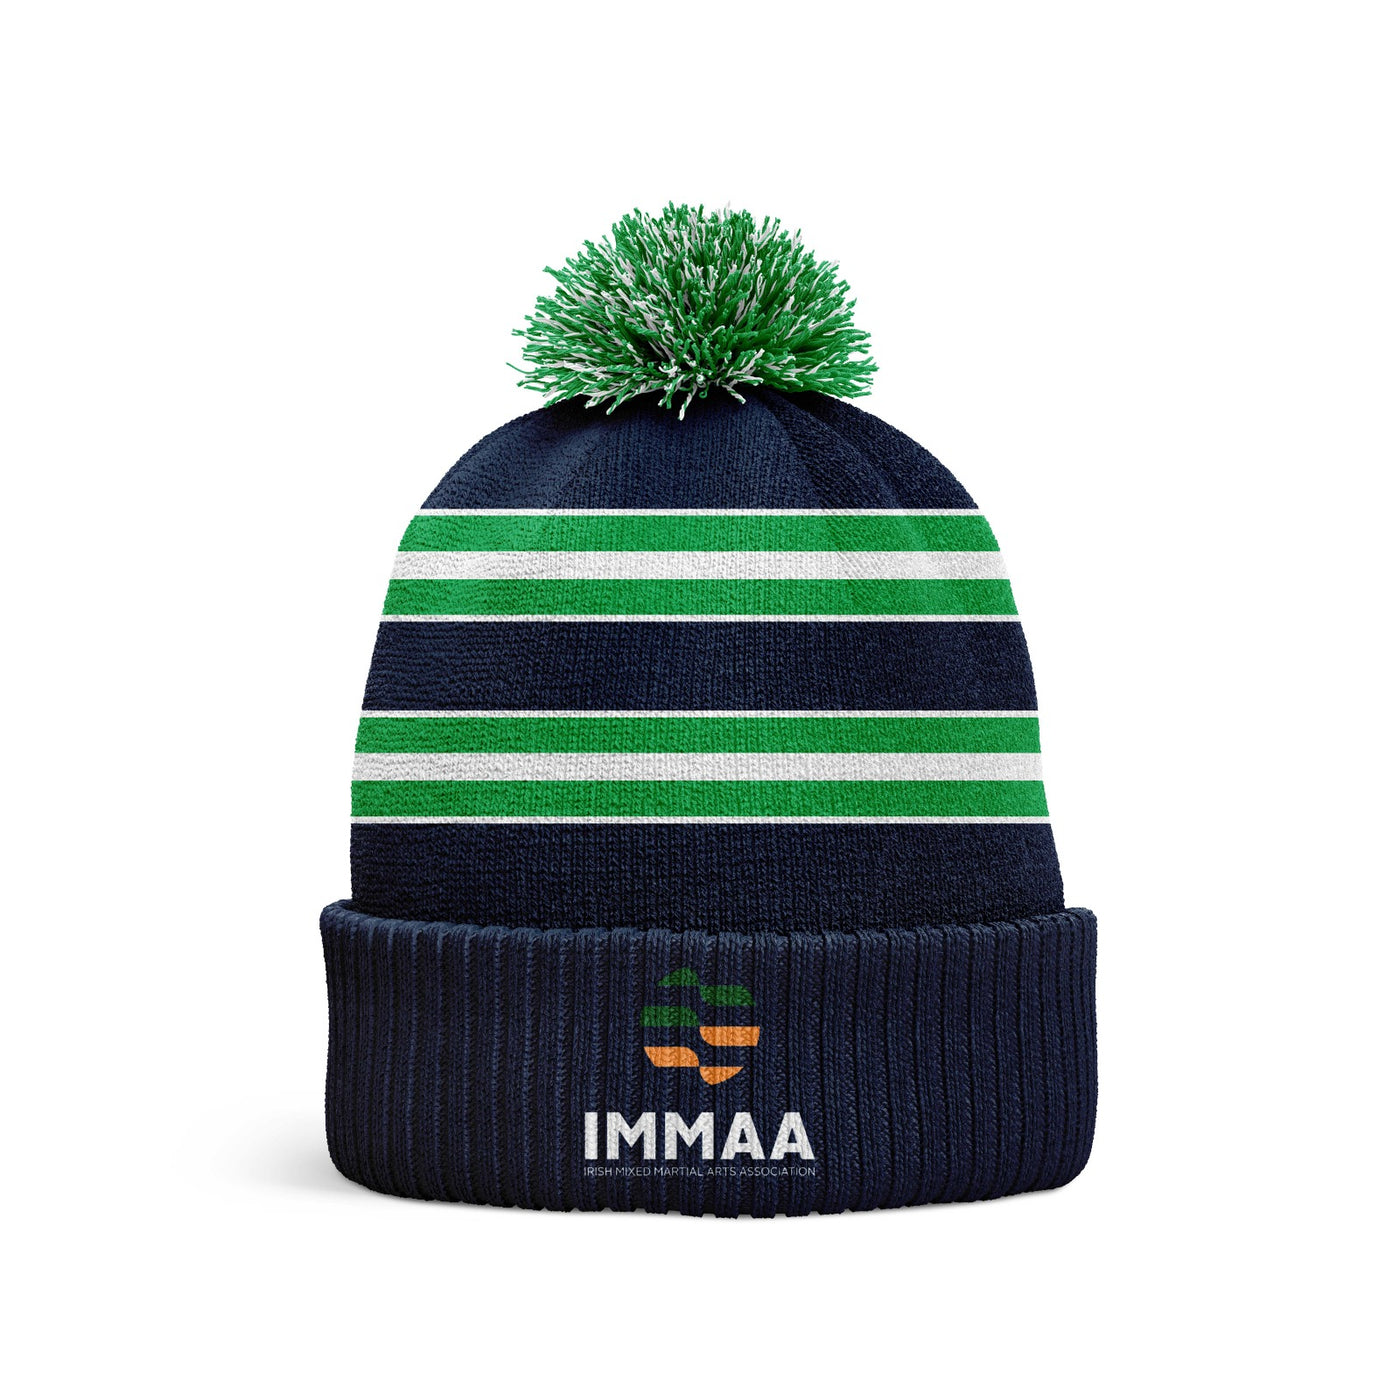 IMMAA Ireland - Beanie Hat